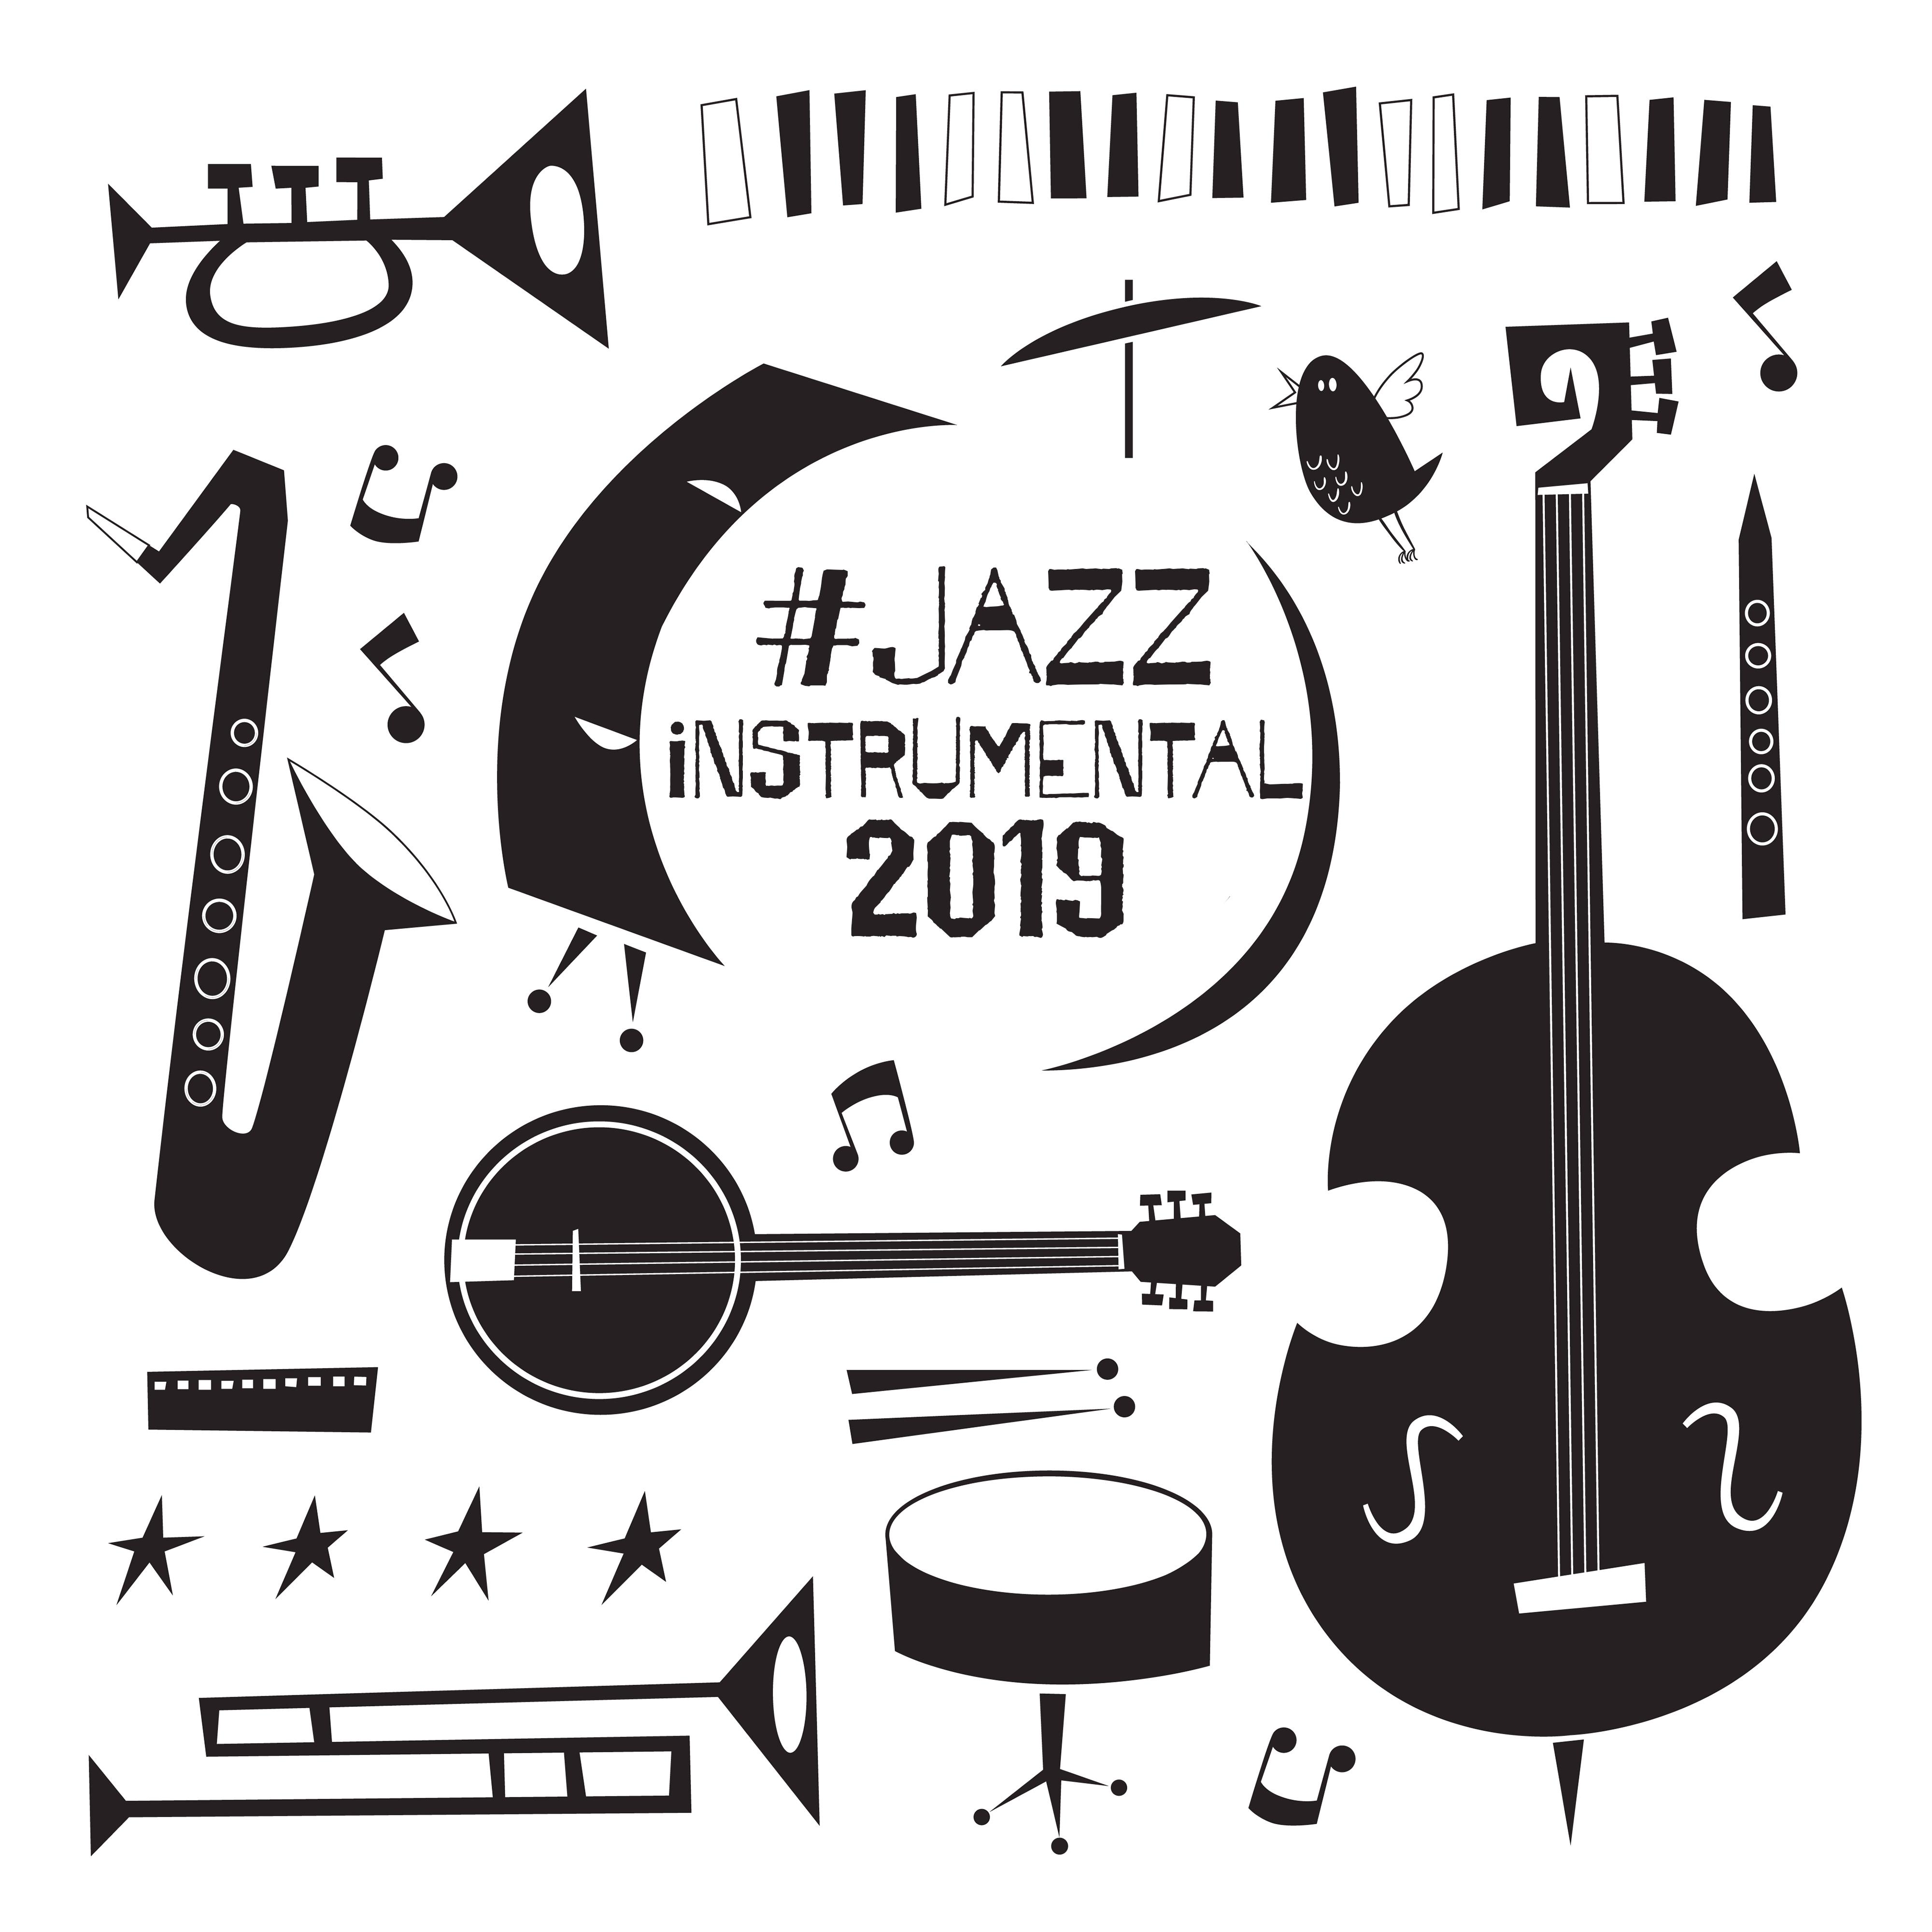 #jazz instrumental 2019 – Instrumental Jazz Music Ambient